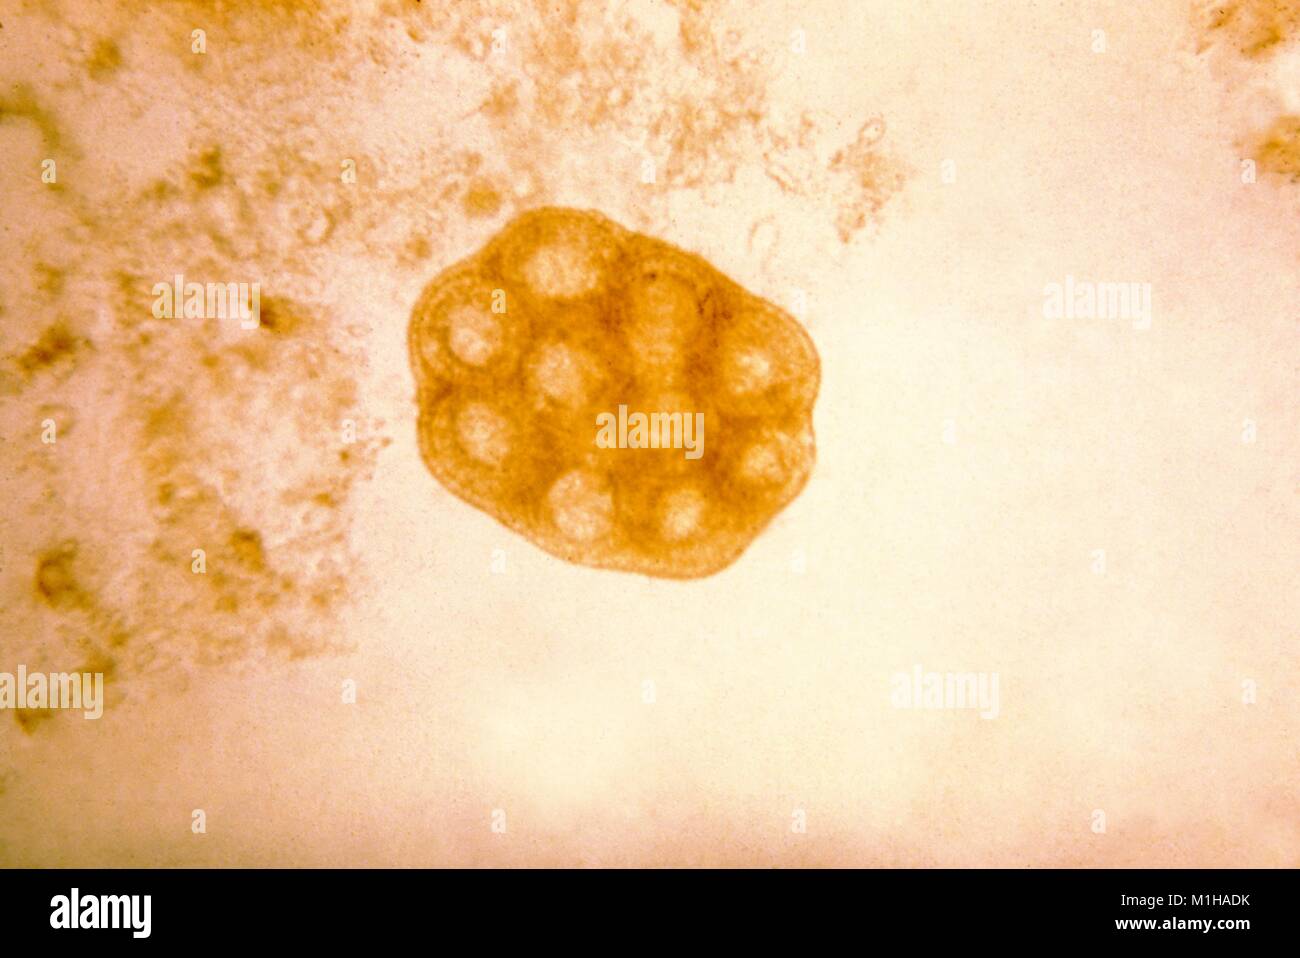 Microfotografia di un uovo pacchetto che è stata rilasciata da una disintegrazione (proglottid tenia segmento), da la pulce tenia specie (Dipylidium caninum), 1979. Immagine cortesia CDC. () Foto Stock